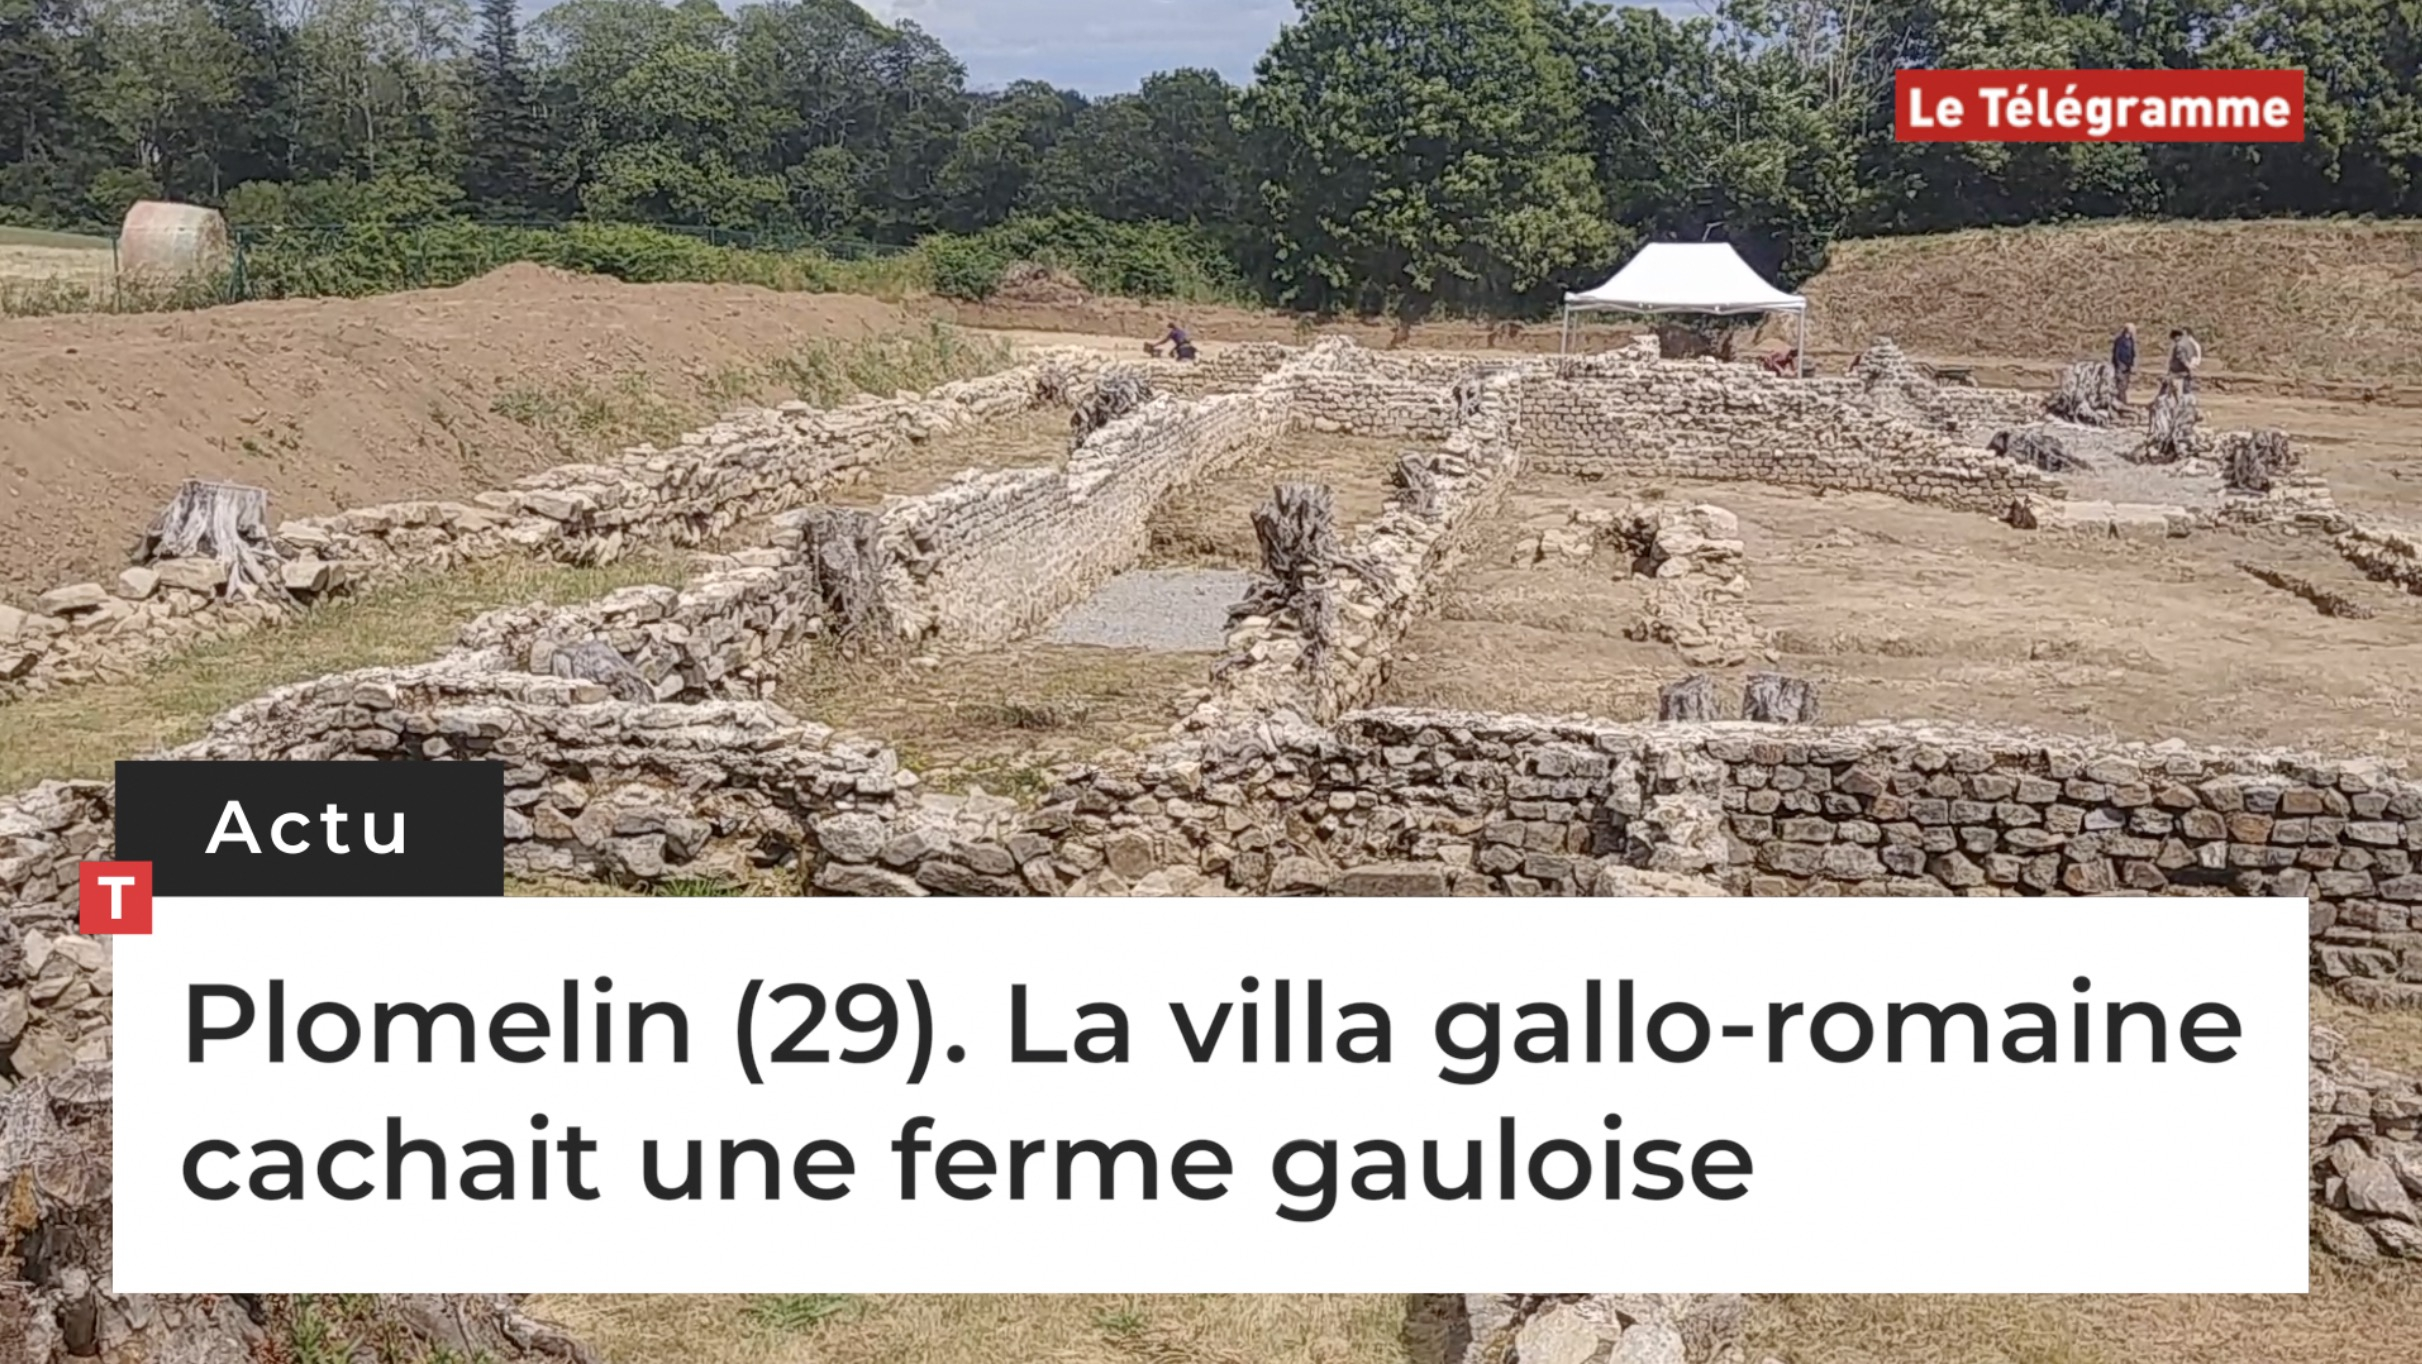 Plomelin (29). La villa gallo romaine cachait une ferme gauloise (Le Télégramme)